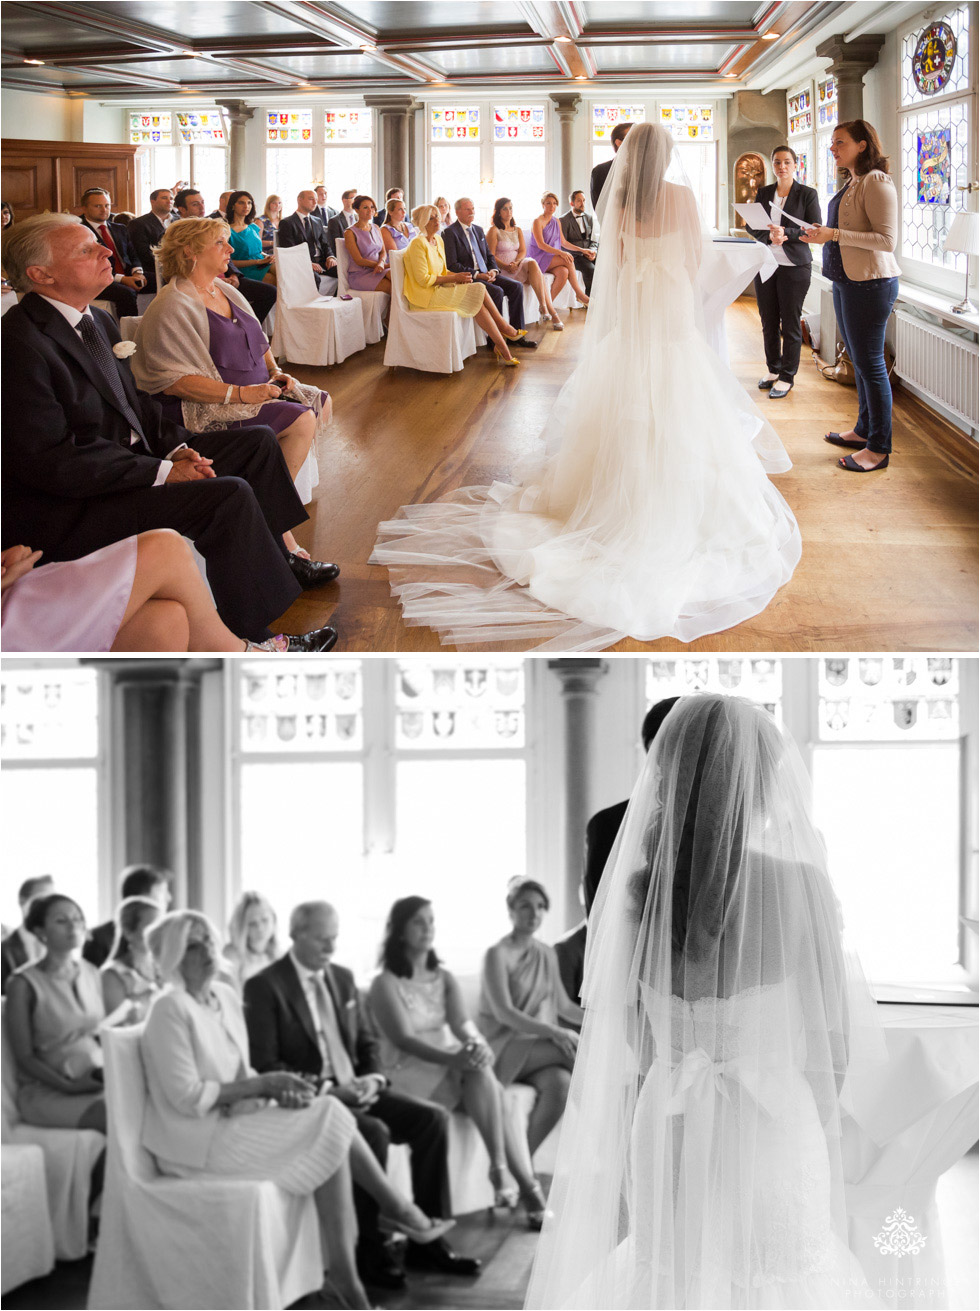 Turkey & USA in Switzerland | Duygu & Bryans International Wedding at Haute | Zurich - Blog of Nina Hintringer Photography - Wedding Photography, Wedding Reportage and Destination Weddings